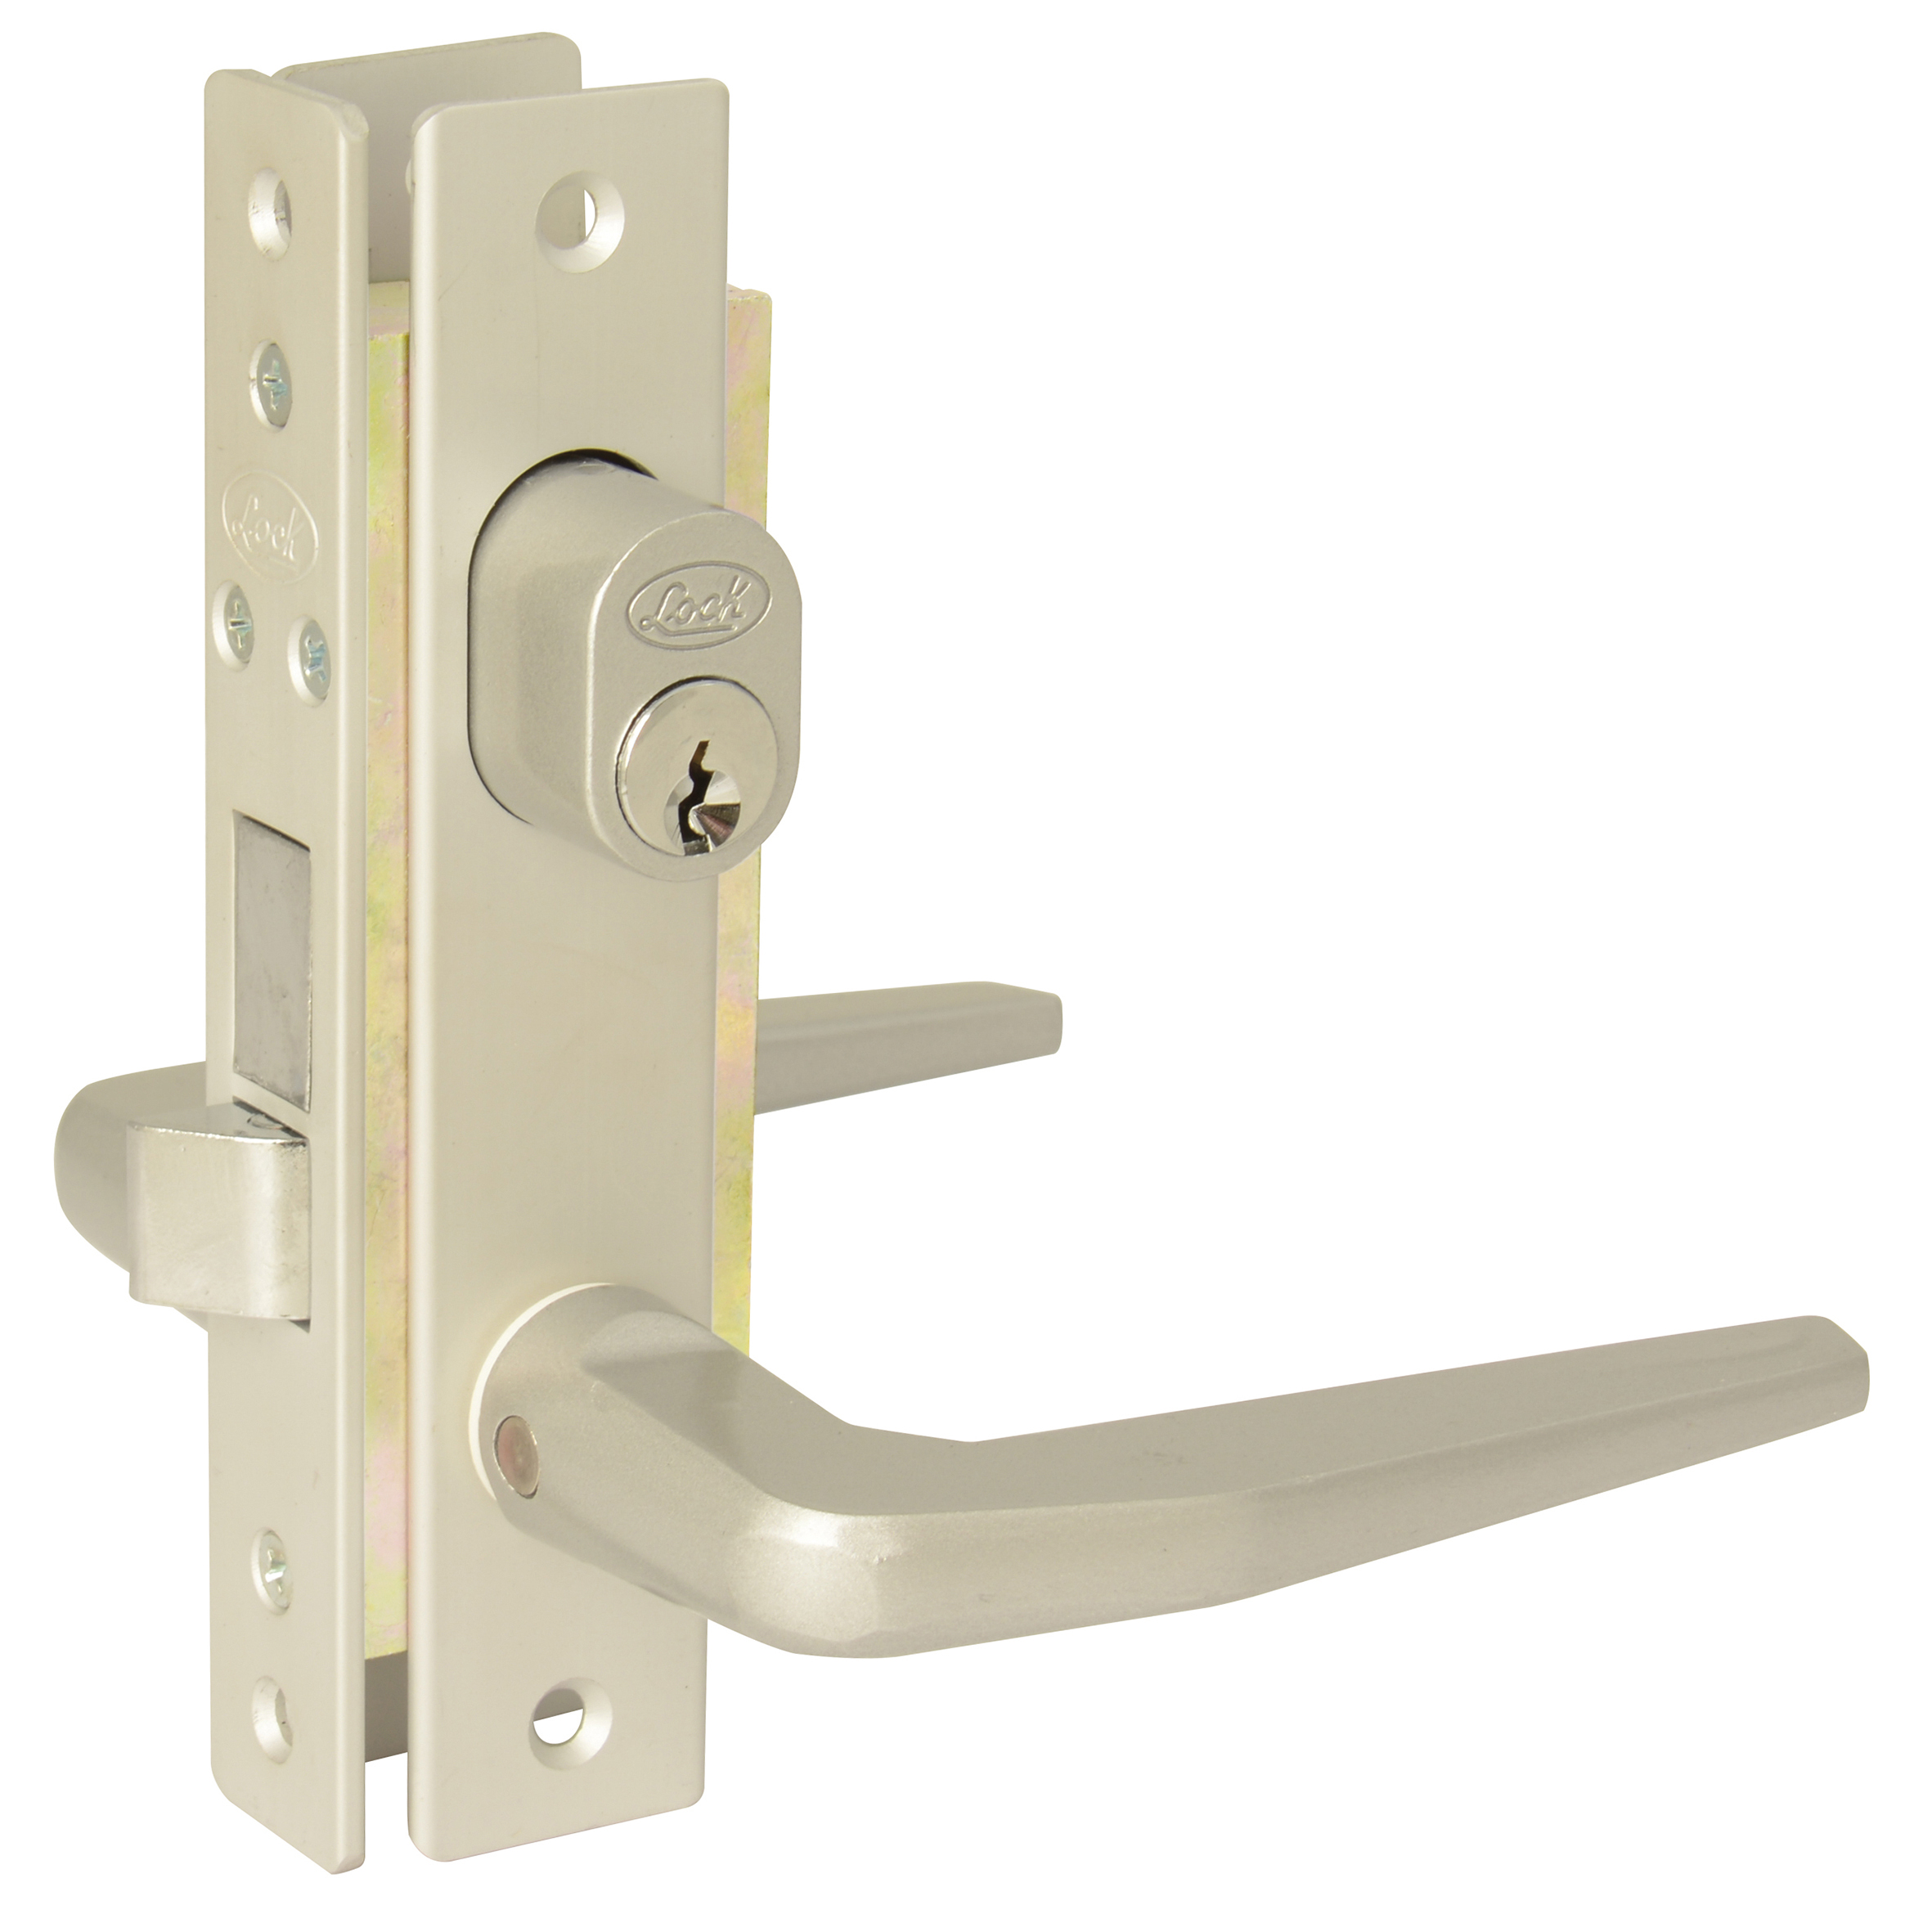 Imagen para Cerradura para puerta de aluminio residencial cilindro sencillo de Grupo Urrea